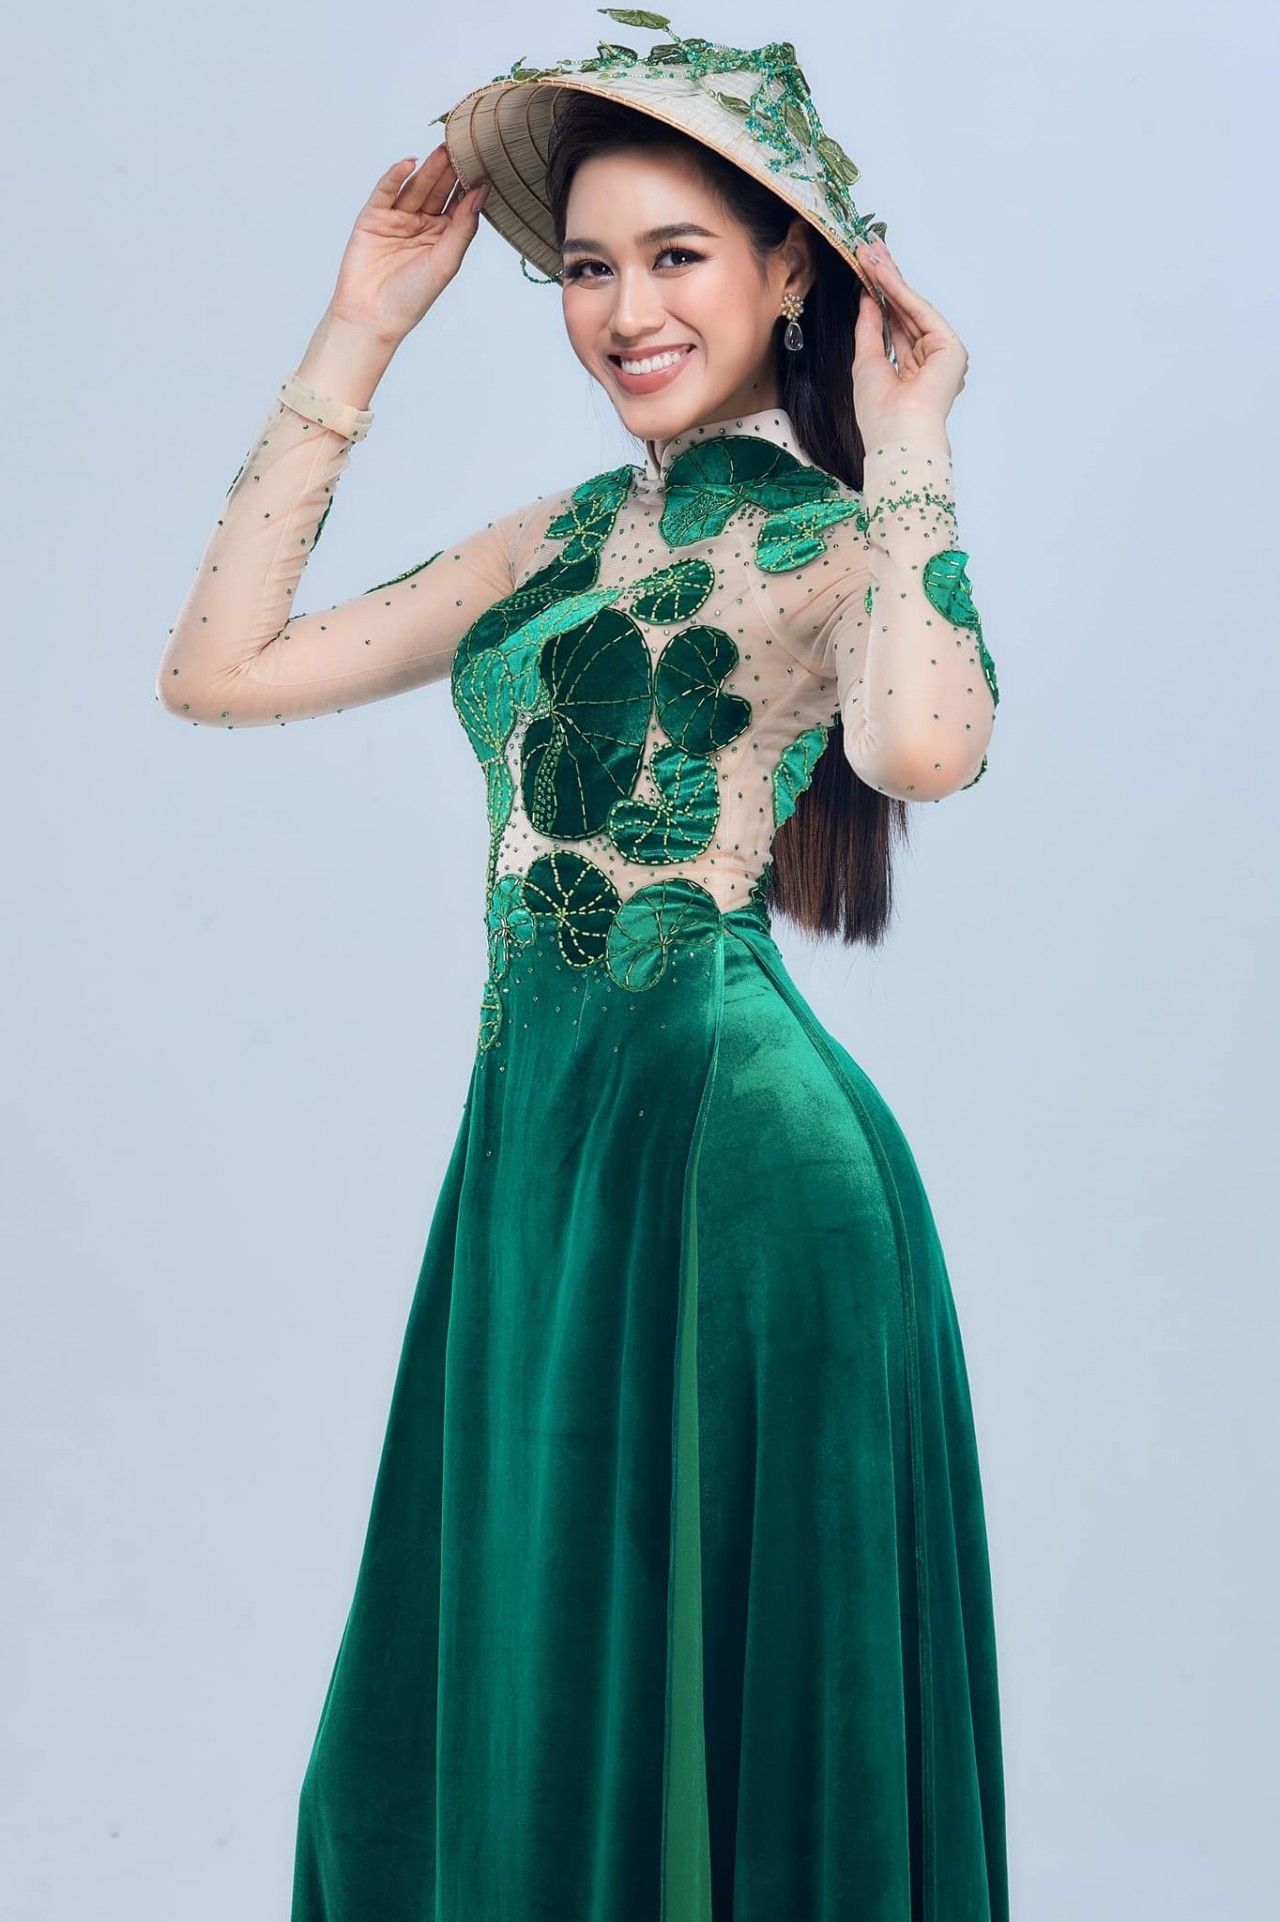 Điểm lại hành trình Đỗ Thị Hà lọt top 12 Miss World 2021